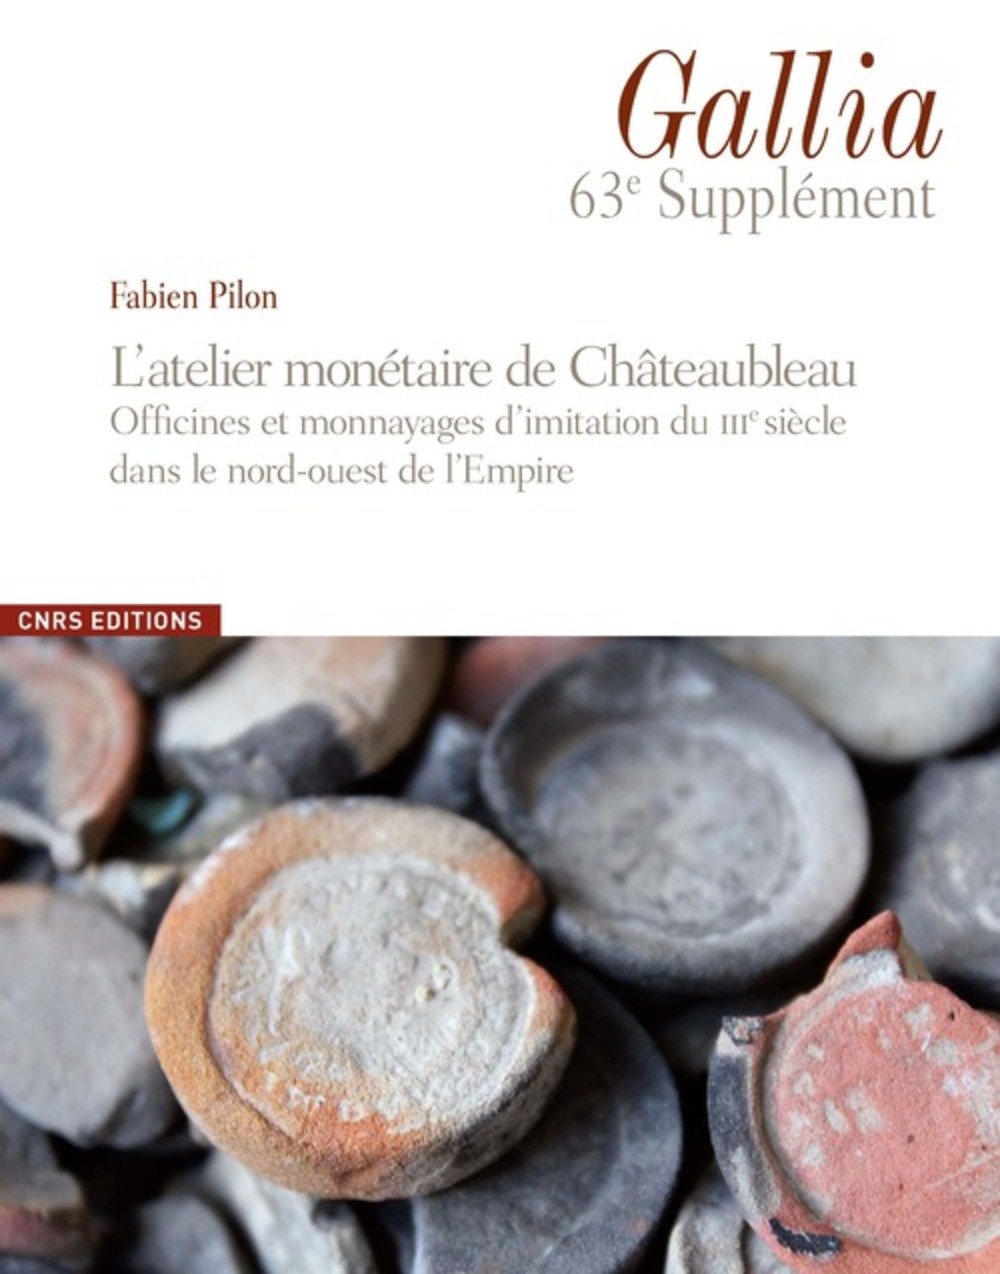 L'atelier monétaire de Châteaubleau. Officines et monnayages d'imitation du IIIe siècle dans le nord-ouest de l'Empire, (63e suppl. Gallia), 2016, 294 p.